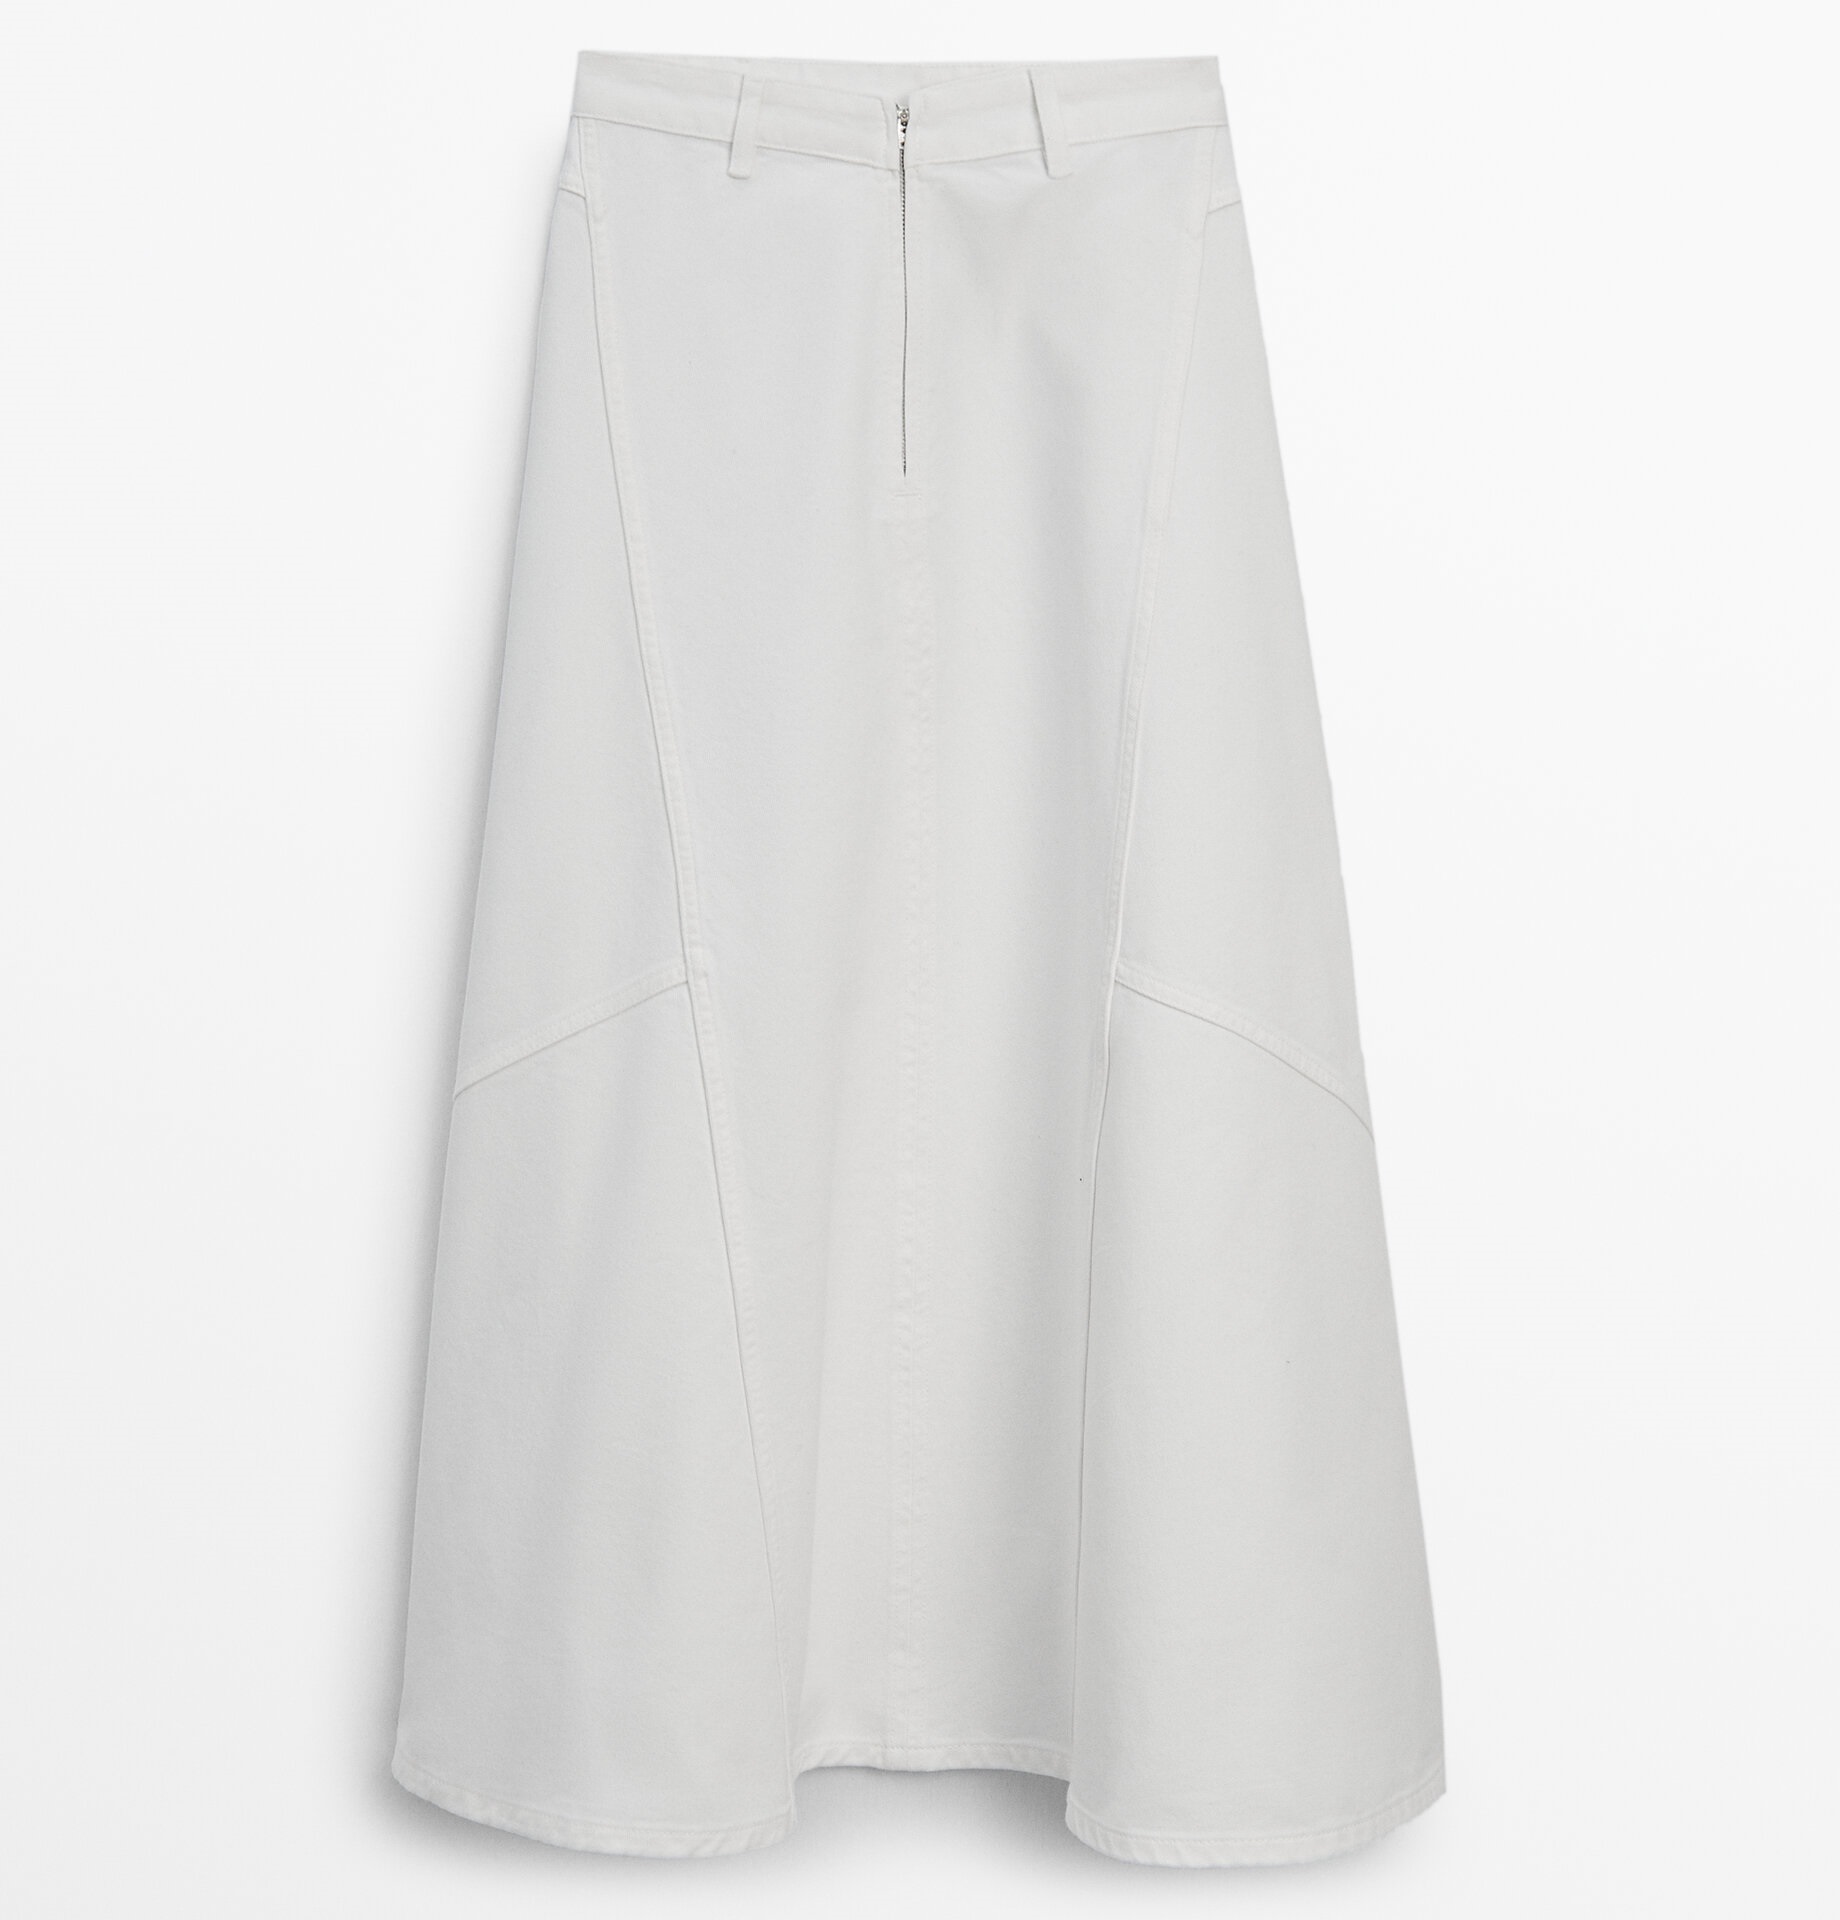 Джинсовая юбка Massimo Dutti Flounce Midi, белый 12⠀storeez джинсовая юбка миди с декоративной планкой